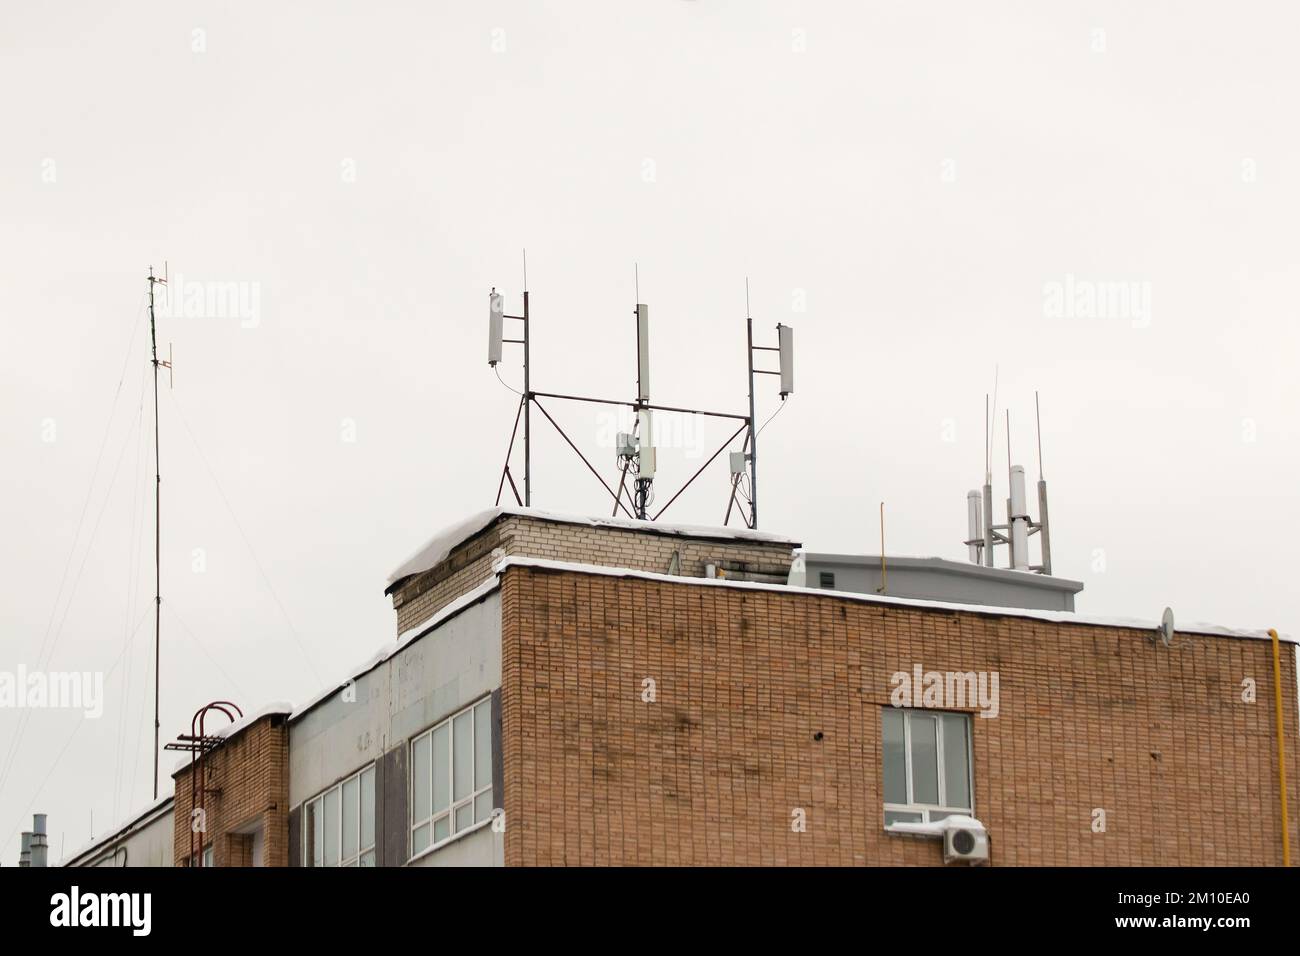 Viele verschiedene Mobilfunkantennen auf dem Dach des Hauses sorgen für Kommunikation. Schnee liegt auf dem Meilenstein, vor dem Hintergrund eines grauen Himmels. Bewölkt, kalter Wintertag, weiches Licht. Stockfoto